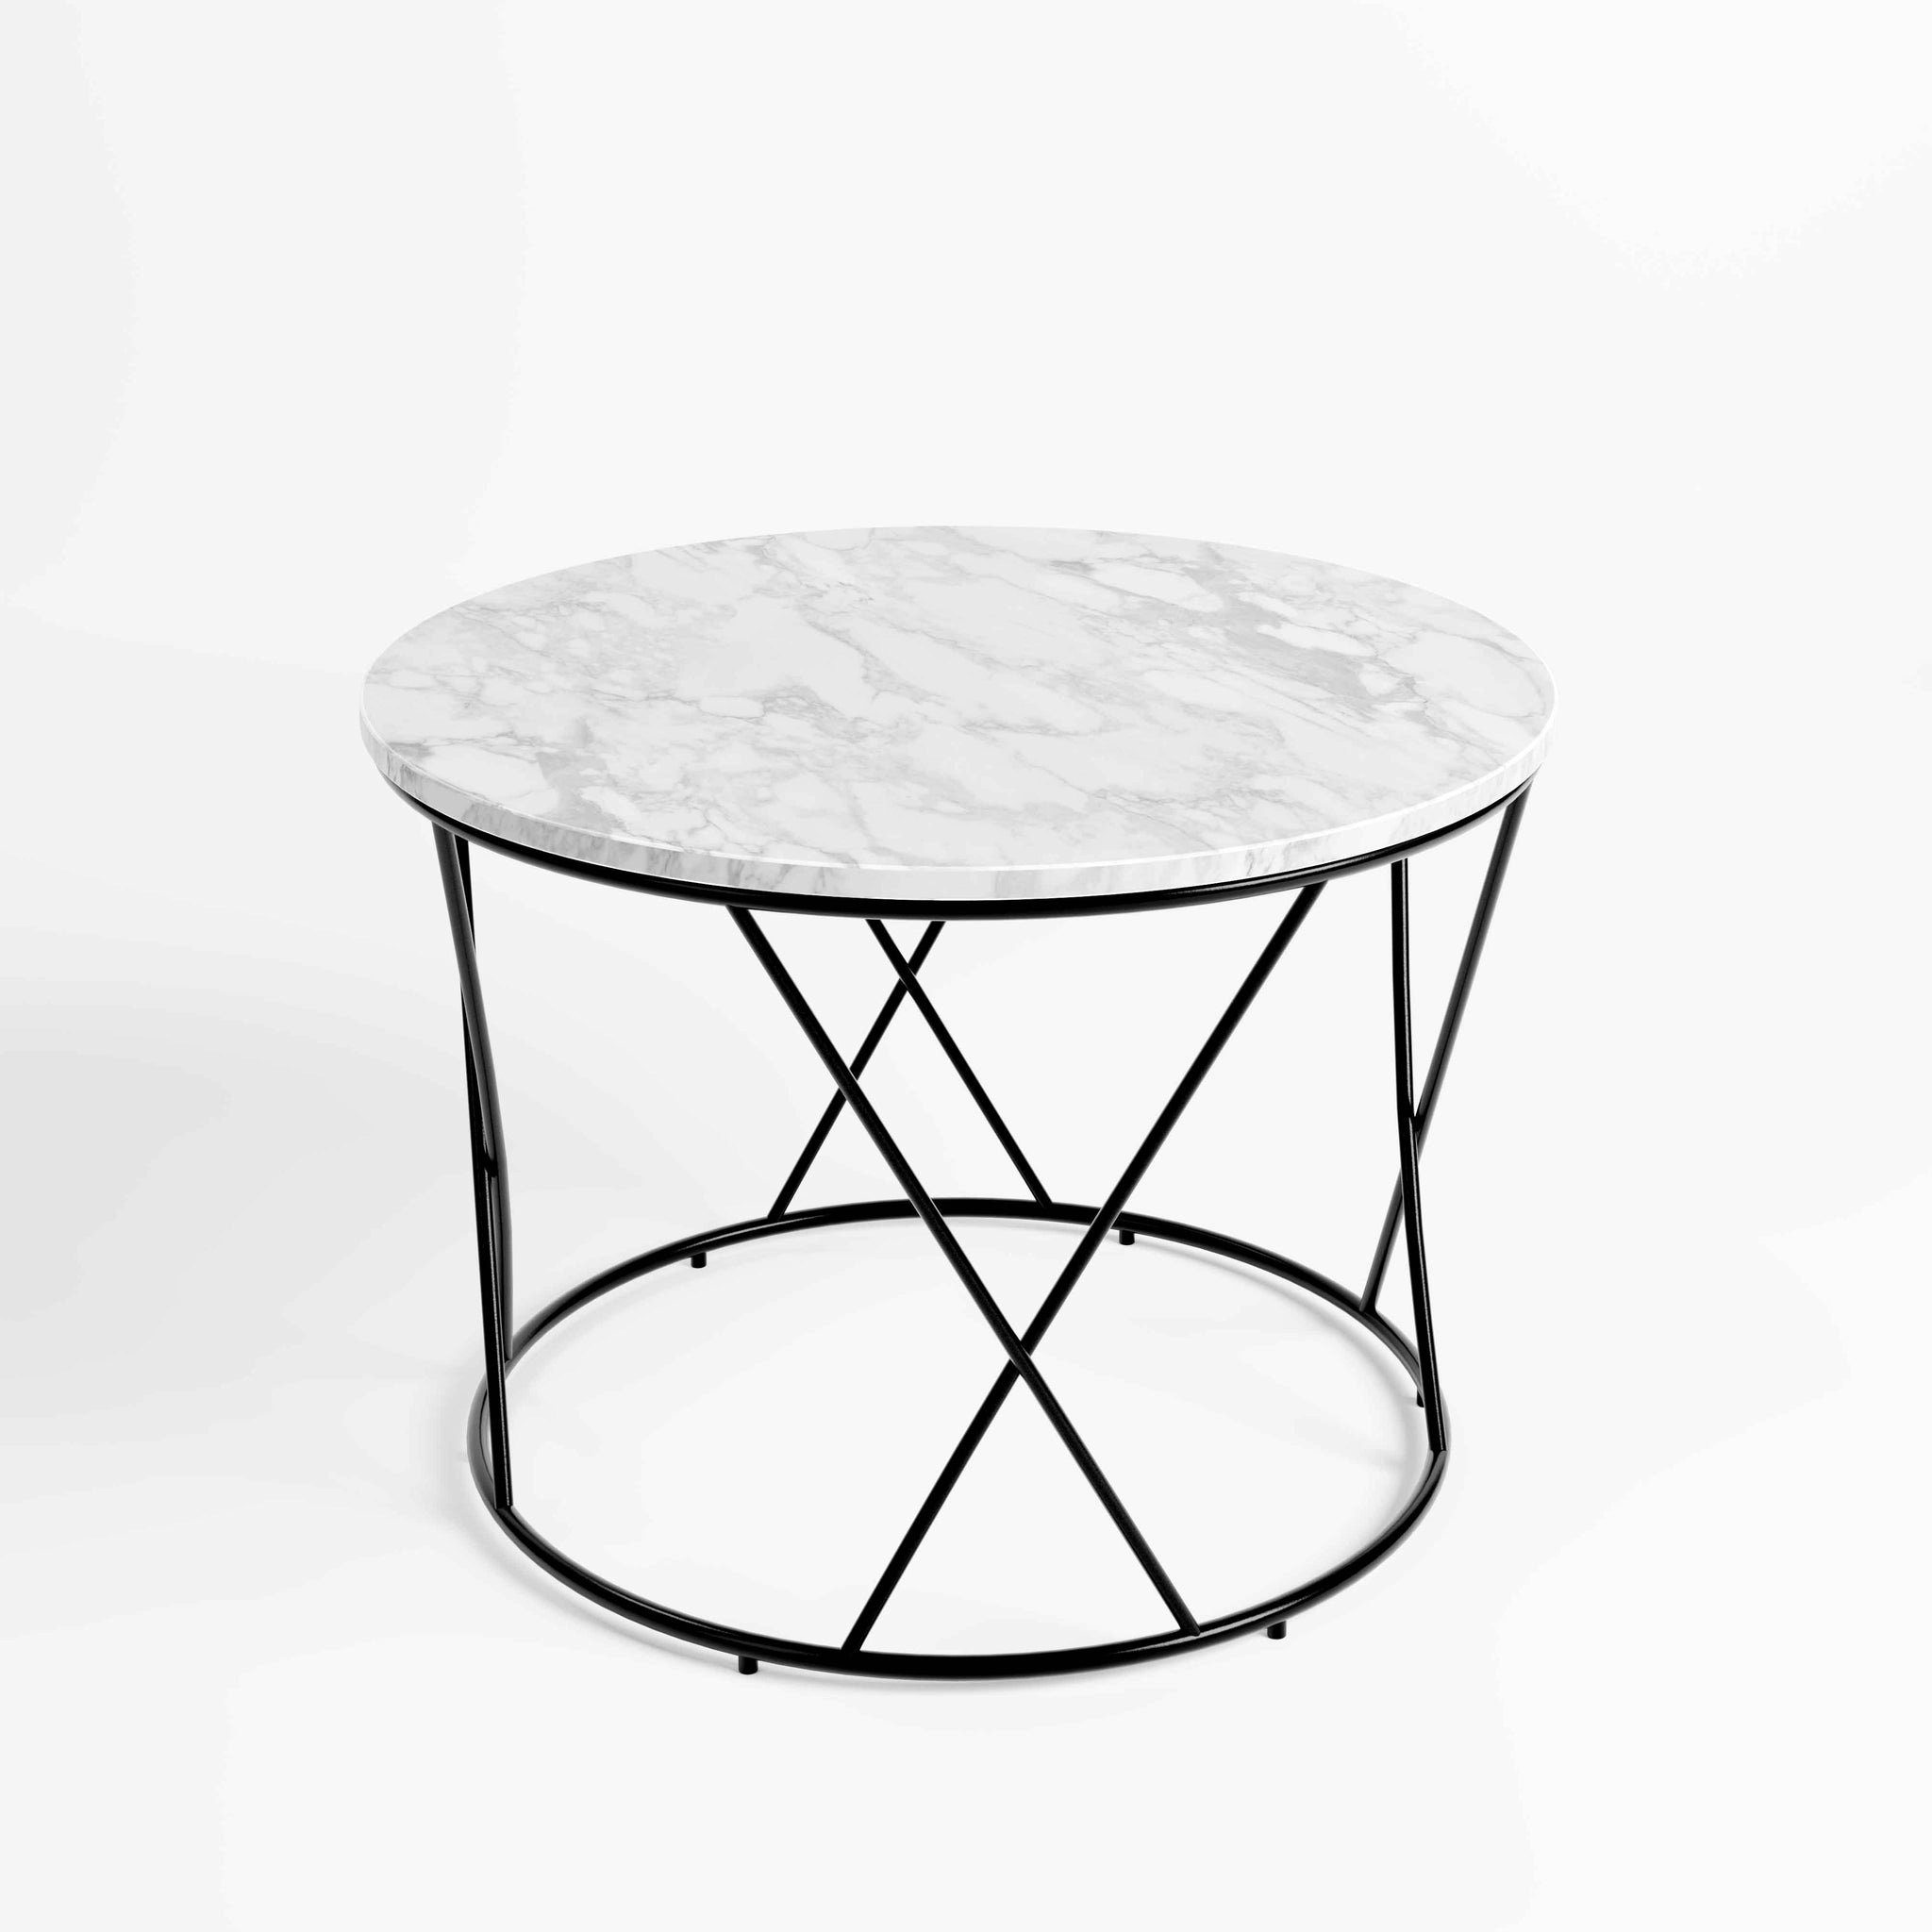 MAGNA Atelier Couchtisch FLORENZ mit ECHTEM MARMOR, Wohnzimmer Tisch rund, Beistelltisch, schwarz Metallgestell, Ø50x52cm Bianco Carrara